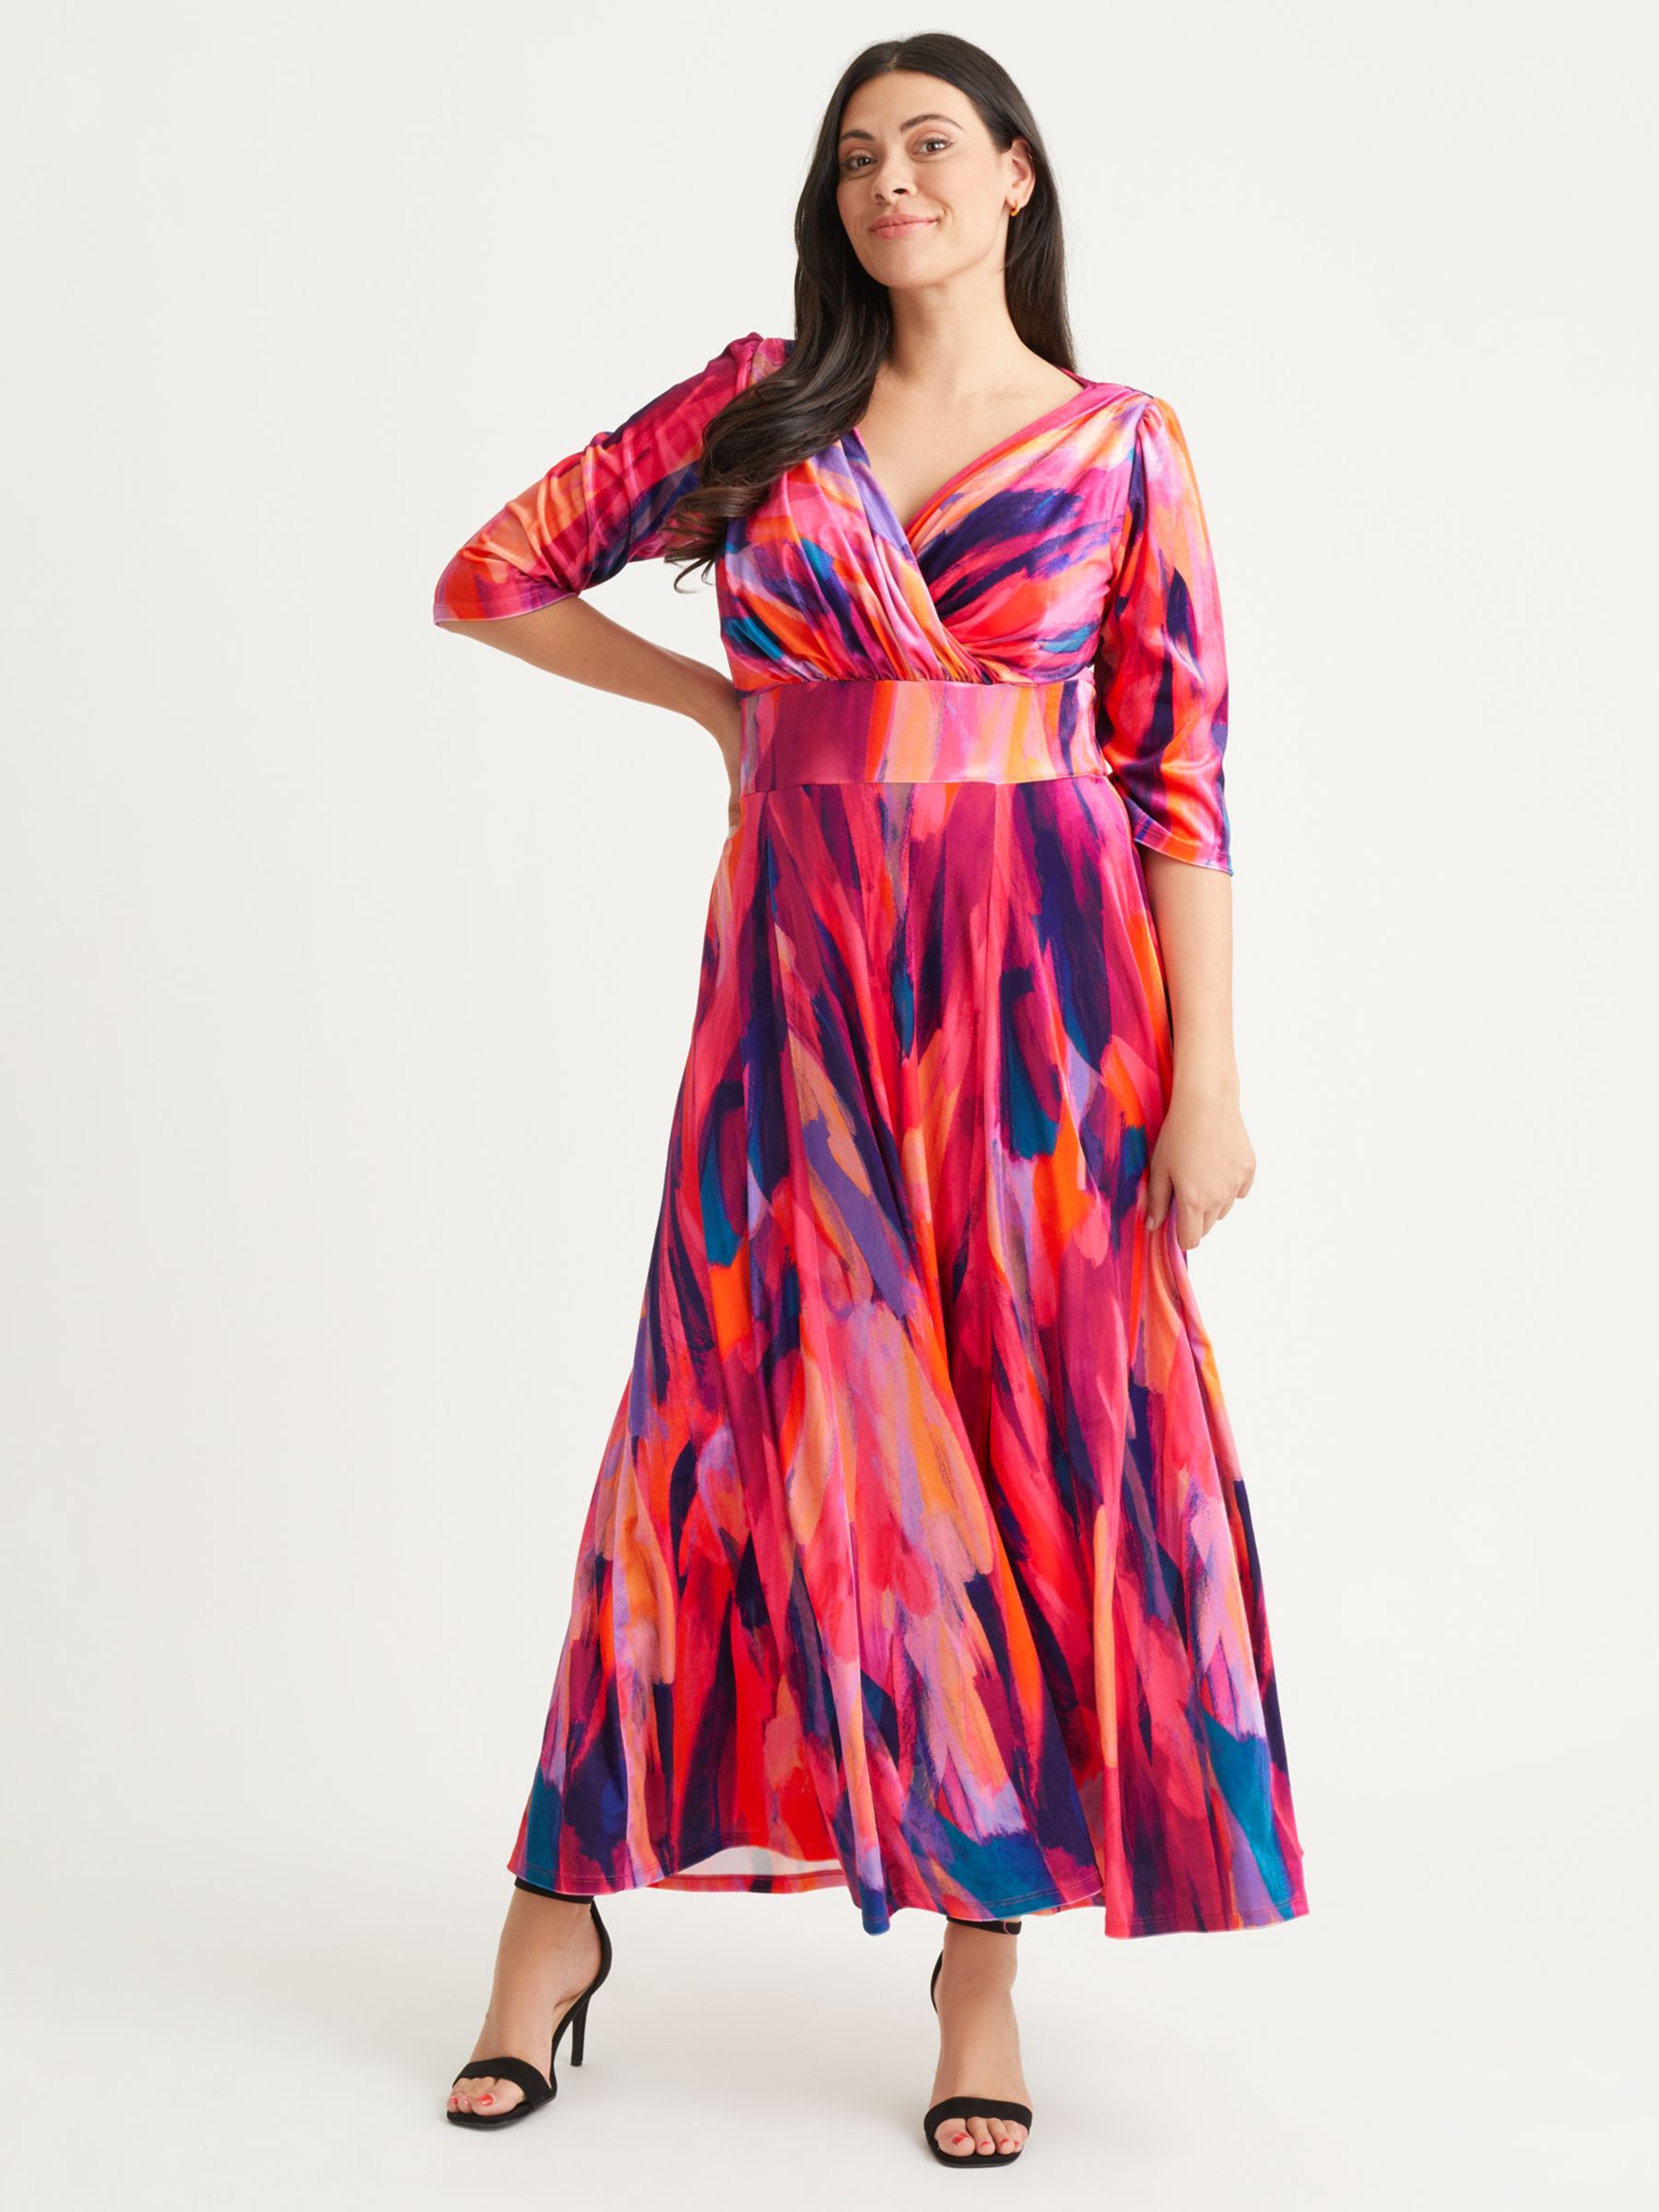 Бархатное платье макси Verity с абстрактным принтом Scarlett & Jo, оранжевый/розовый цена и фото